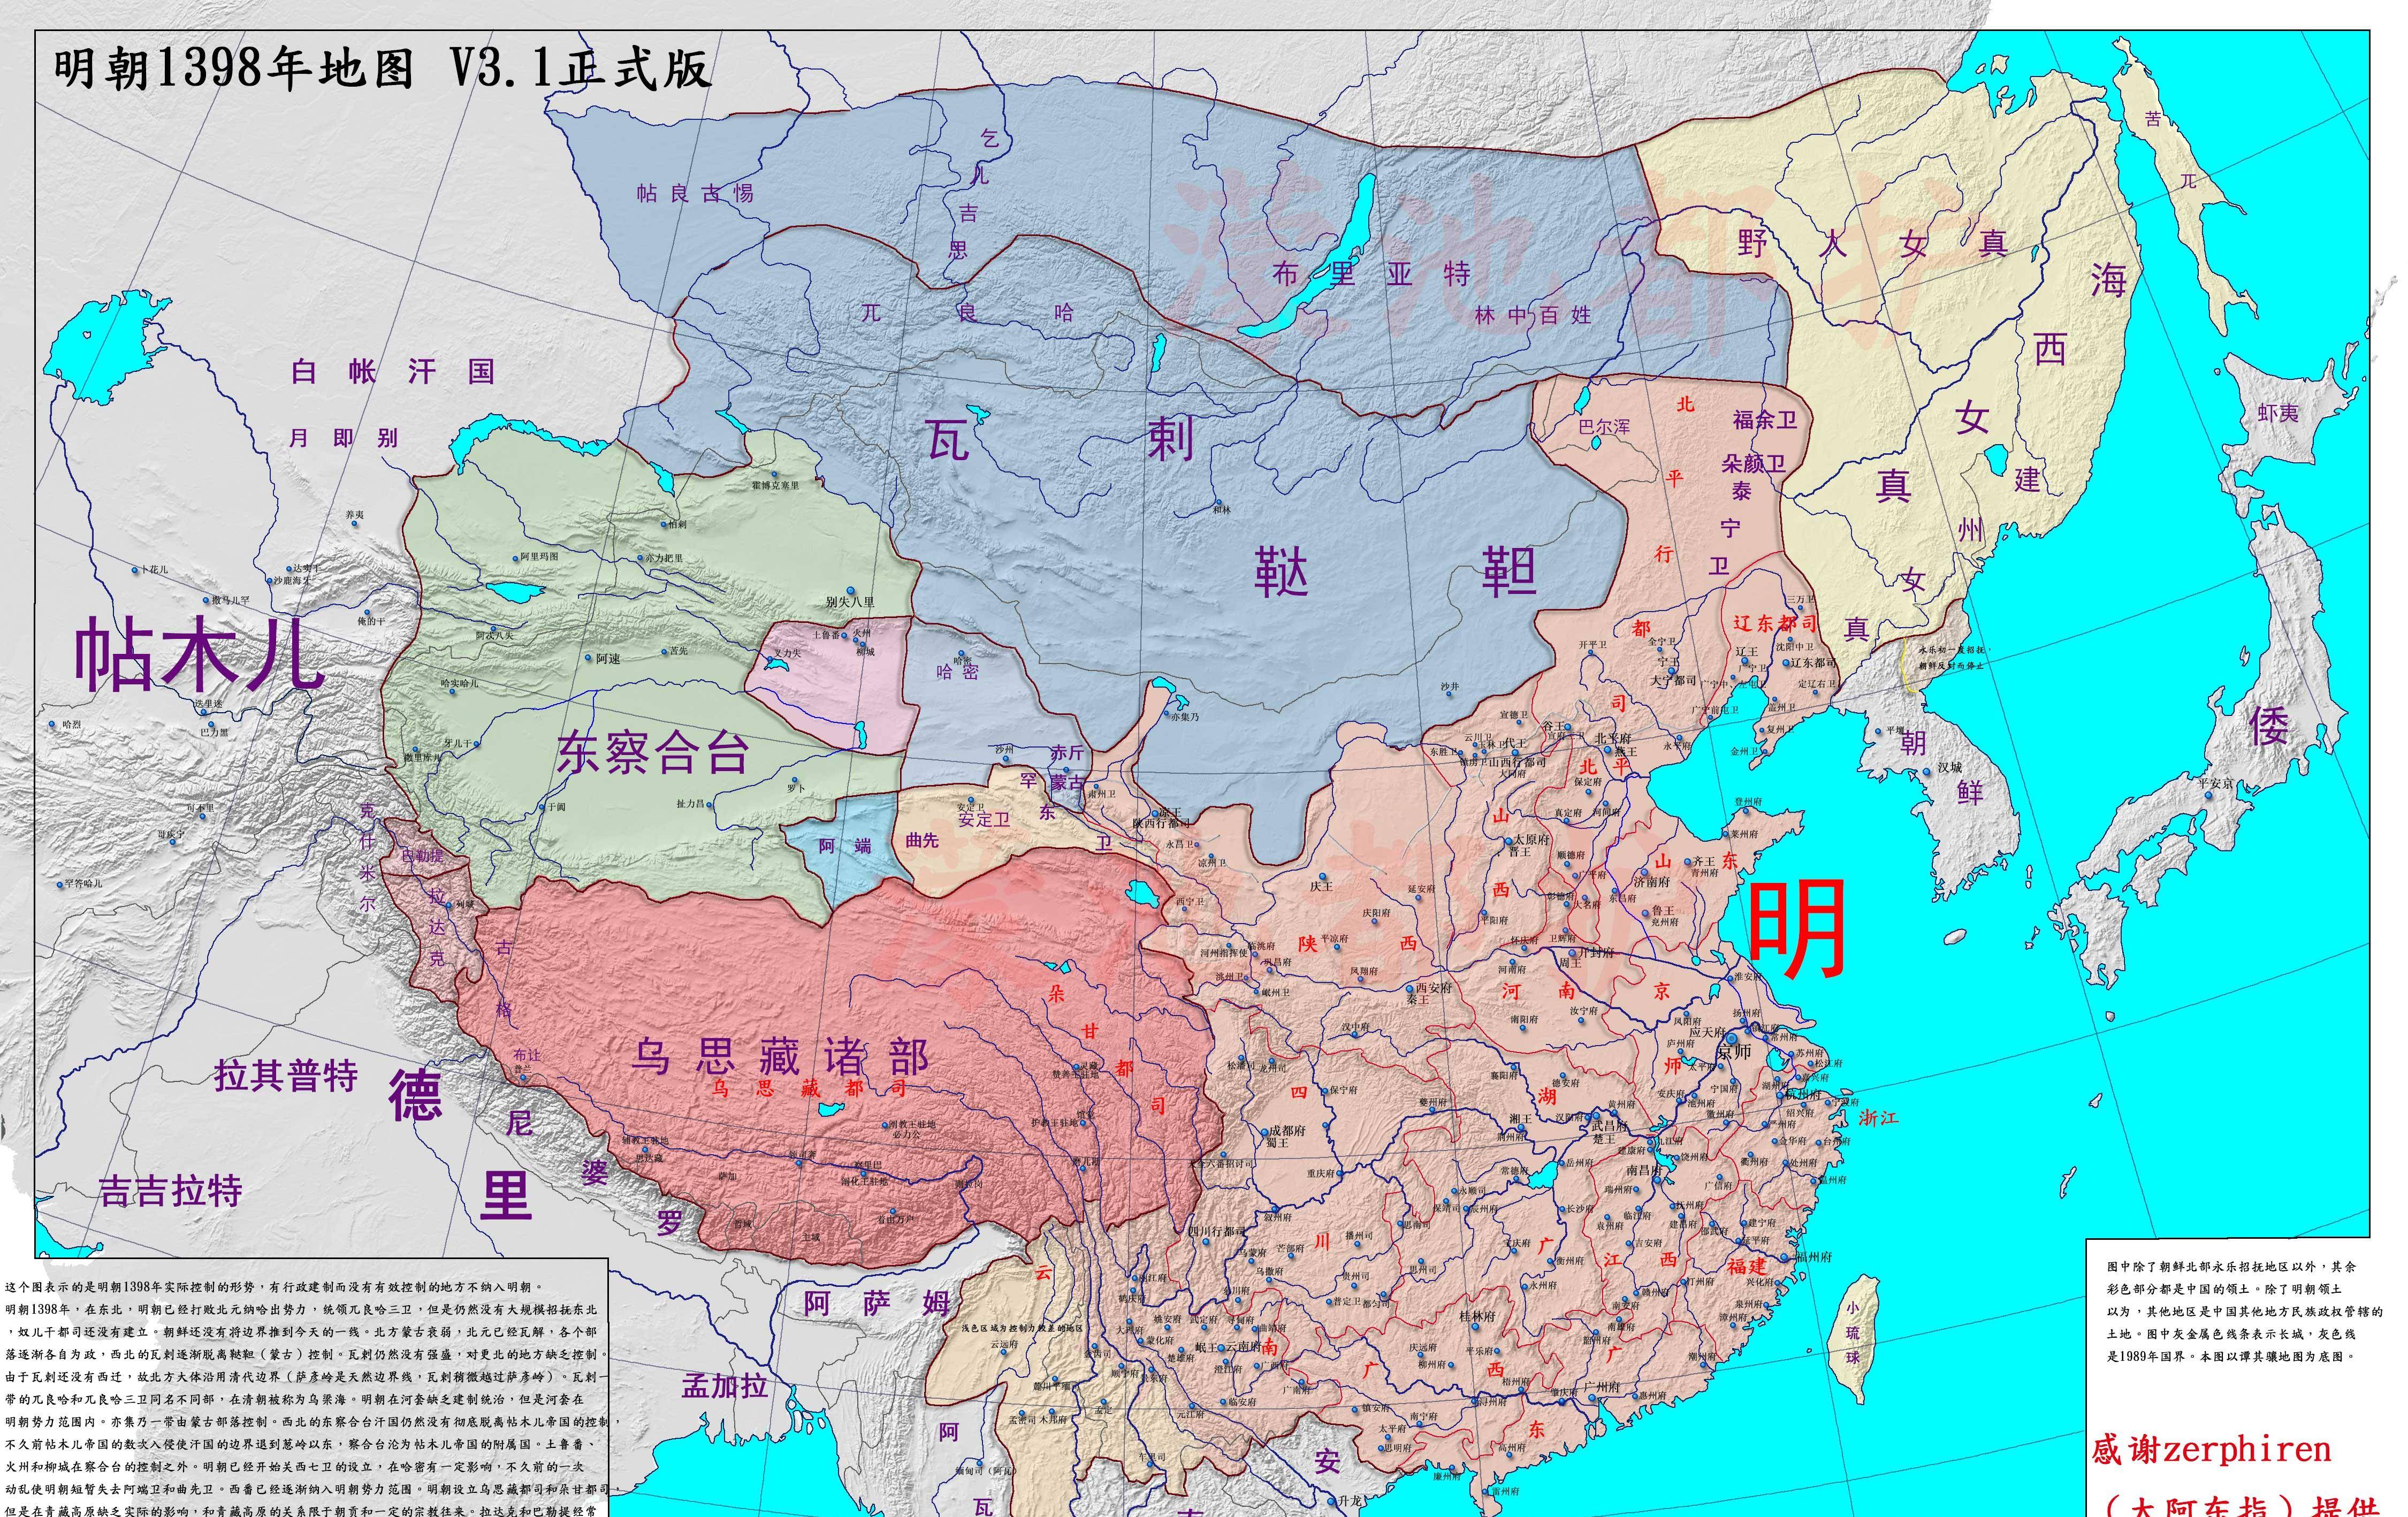 原创真实的明朝疆域变迁地图完整展示明朝276年的疆域变化